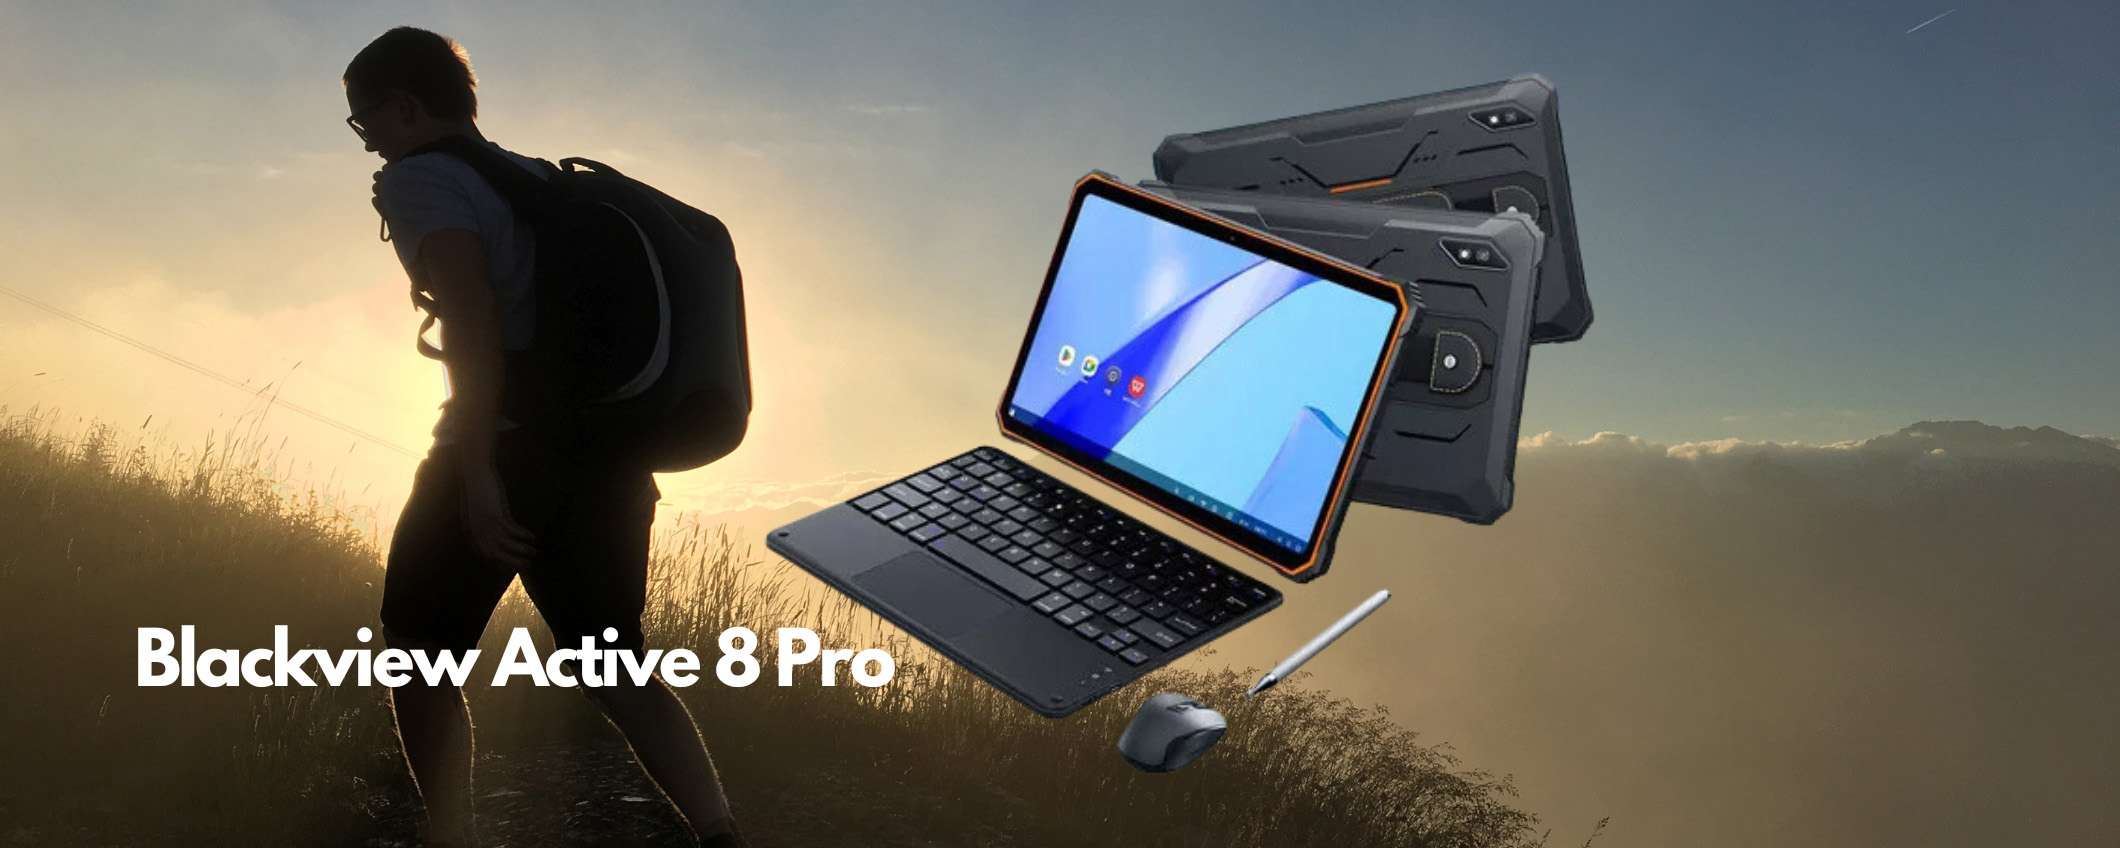 Blackview presenta il primo Tablet Rugged di fascia alta al mondo, l'Active 8 Pro